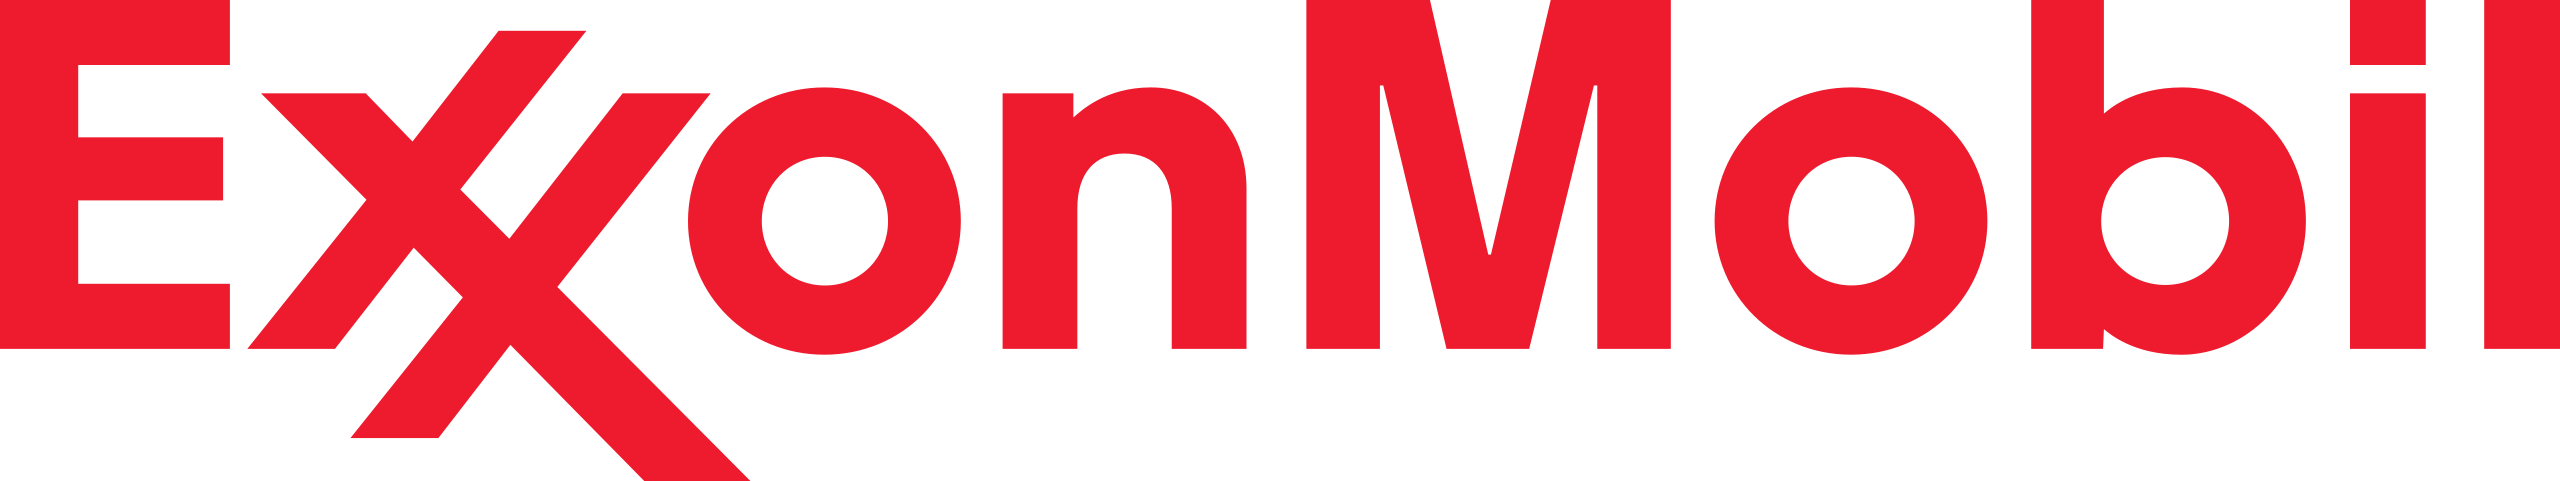 Exxon Mobil (Esso en France) issue de la fusion entre Exxon et Mobil 